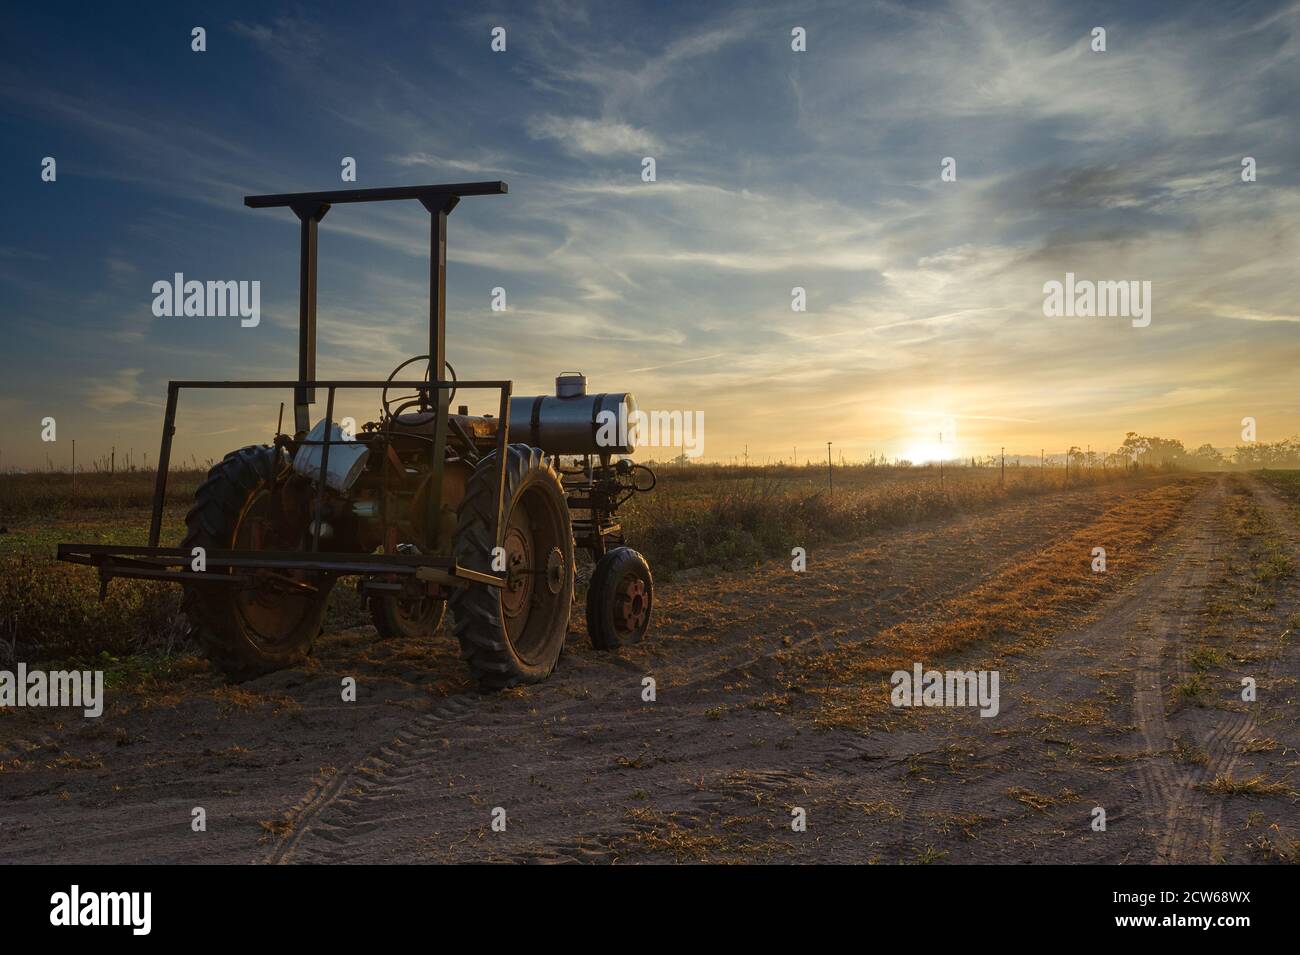 Un vecchio trattore agricolo è inutilizzato, bagnato dalla luce del sole che sorge su una strada sterrata accanto ad un paddock pronto per l'aratura a Mareba, Australia. Foto Stock